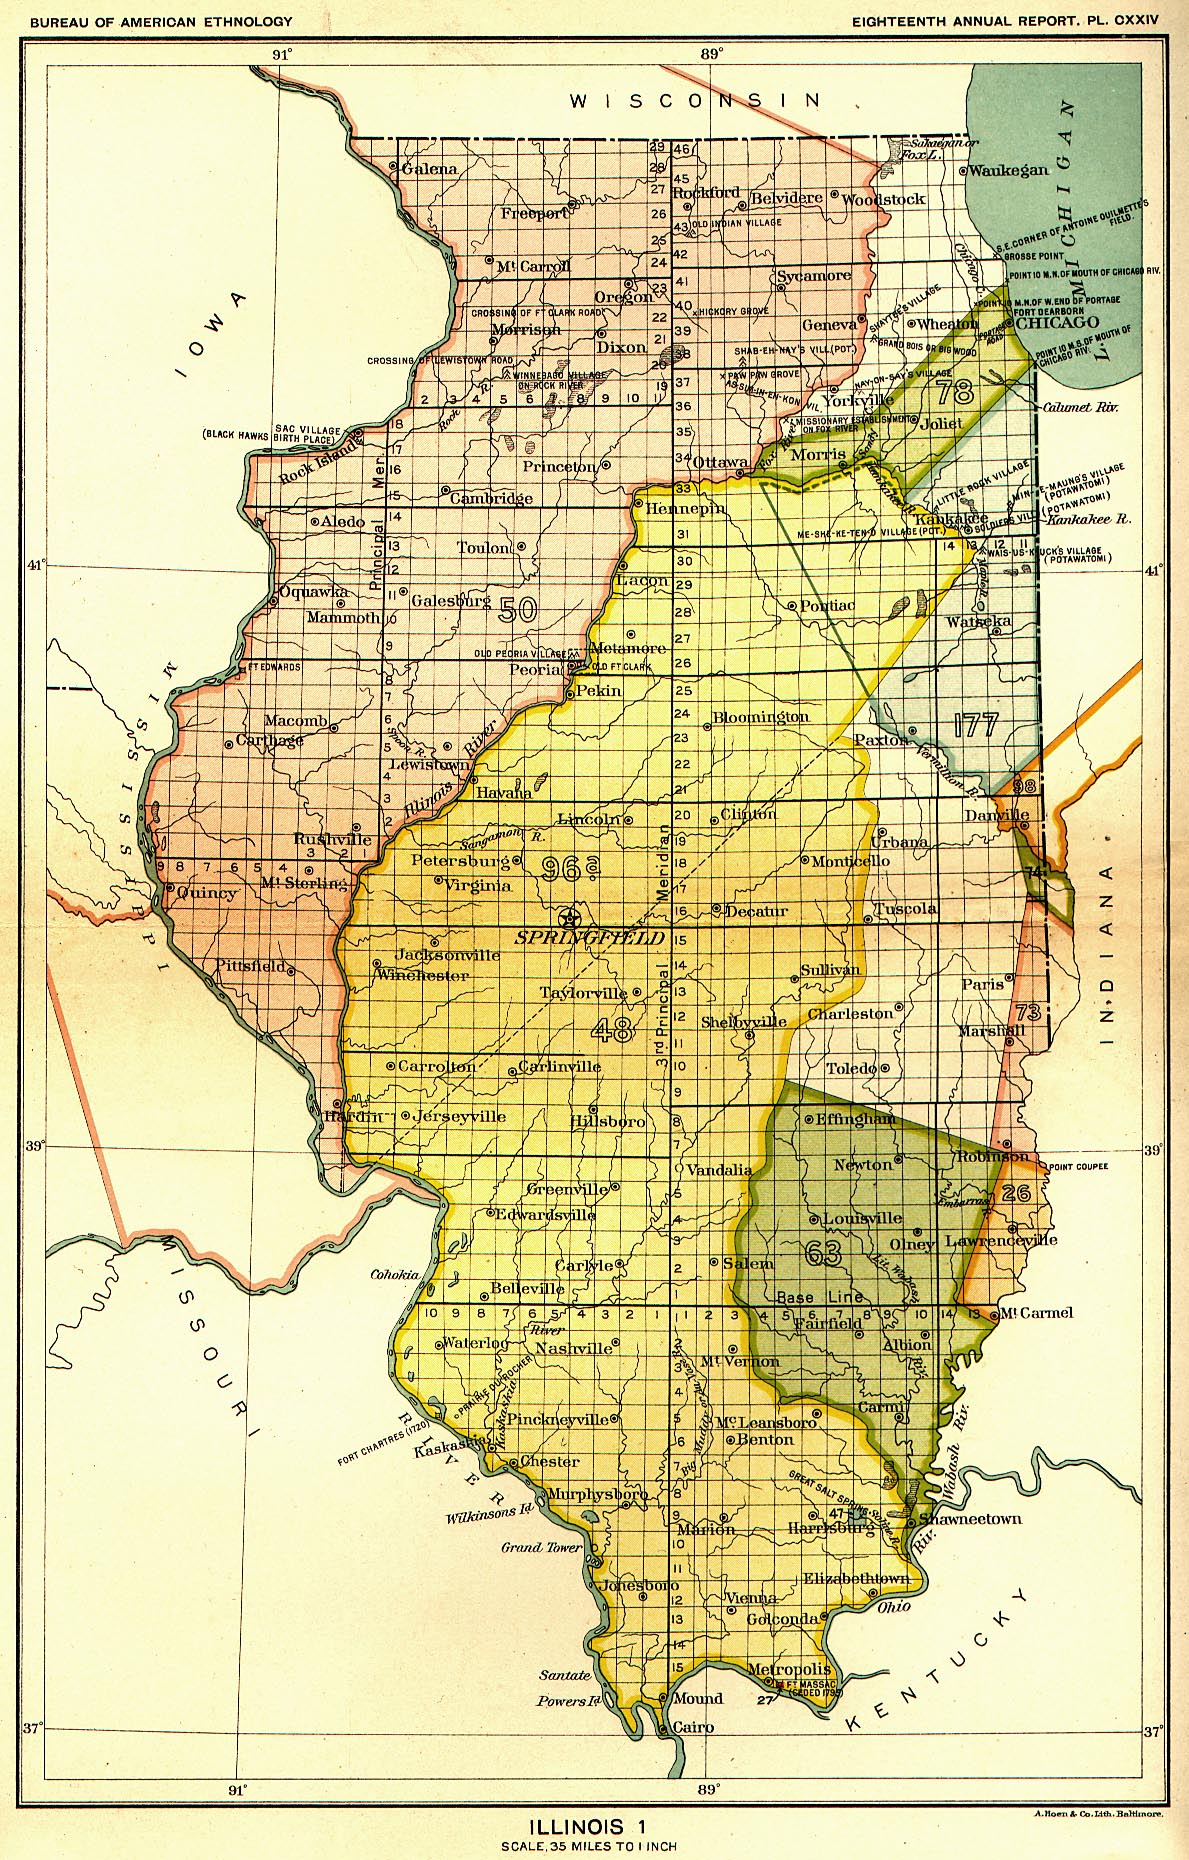 Illinois 1, Map 17